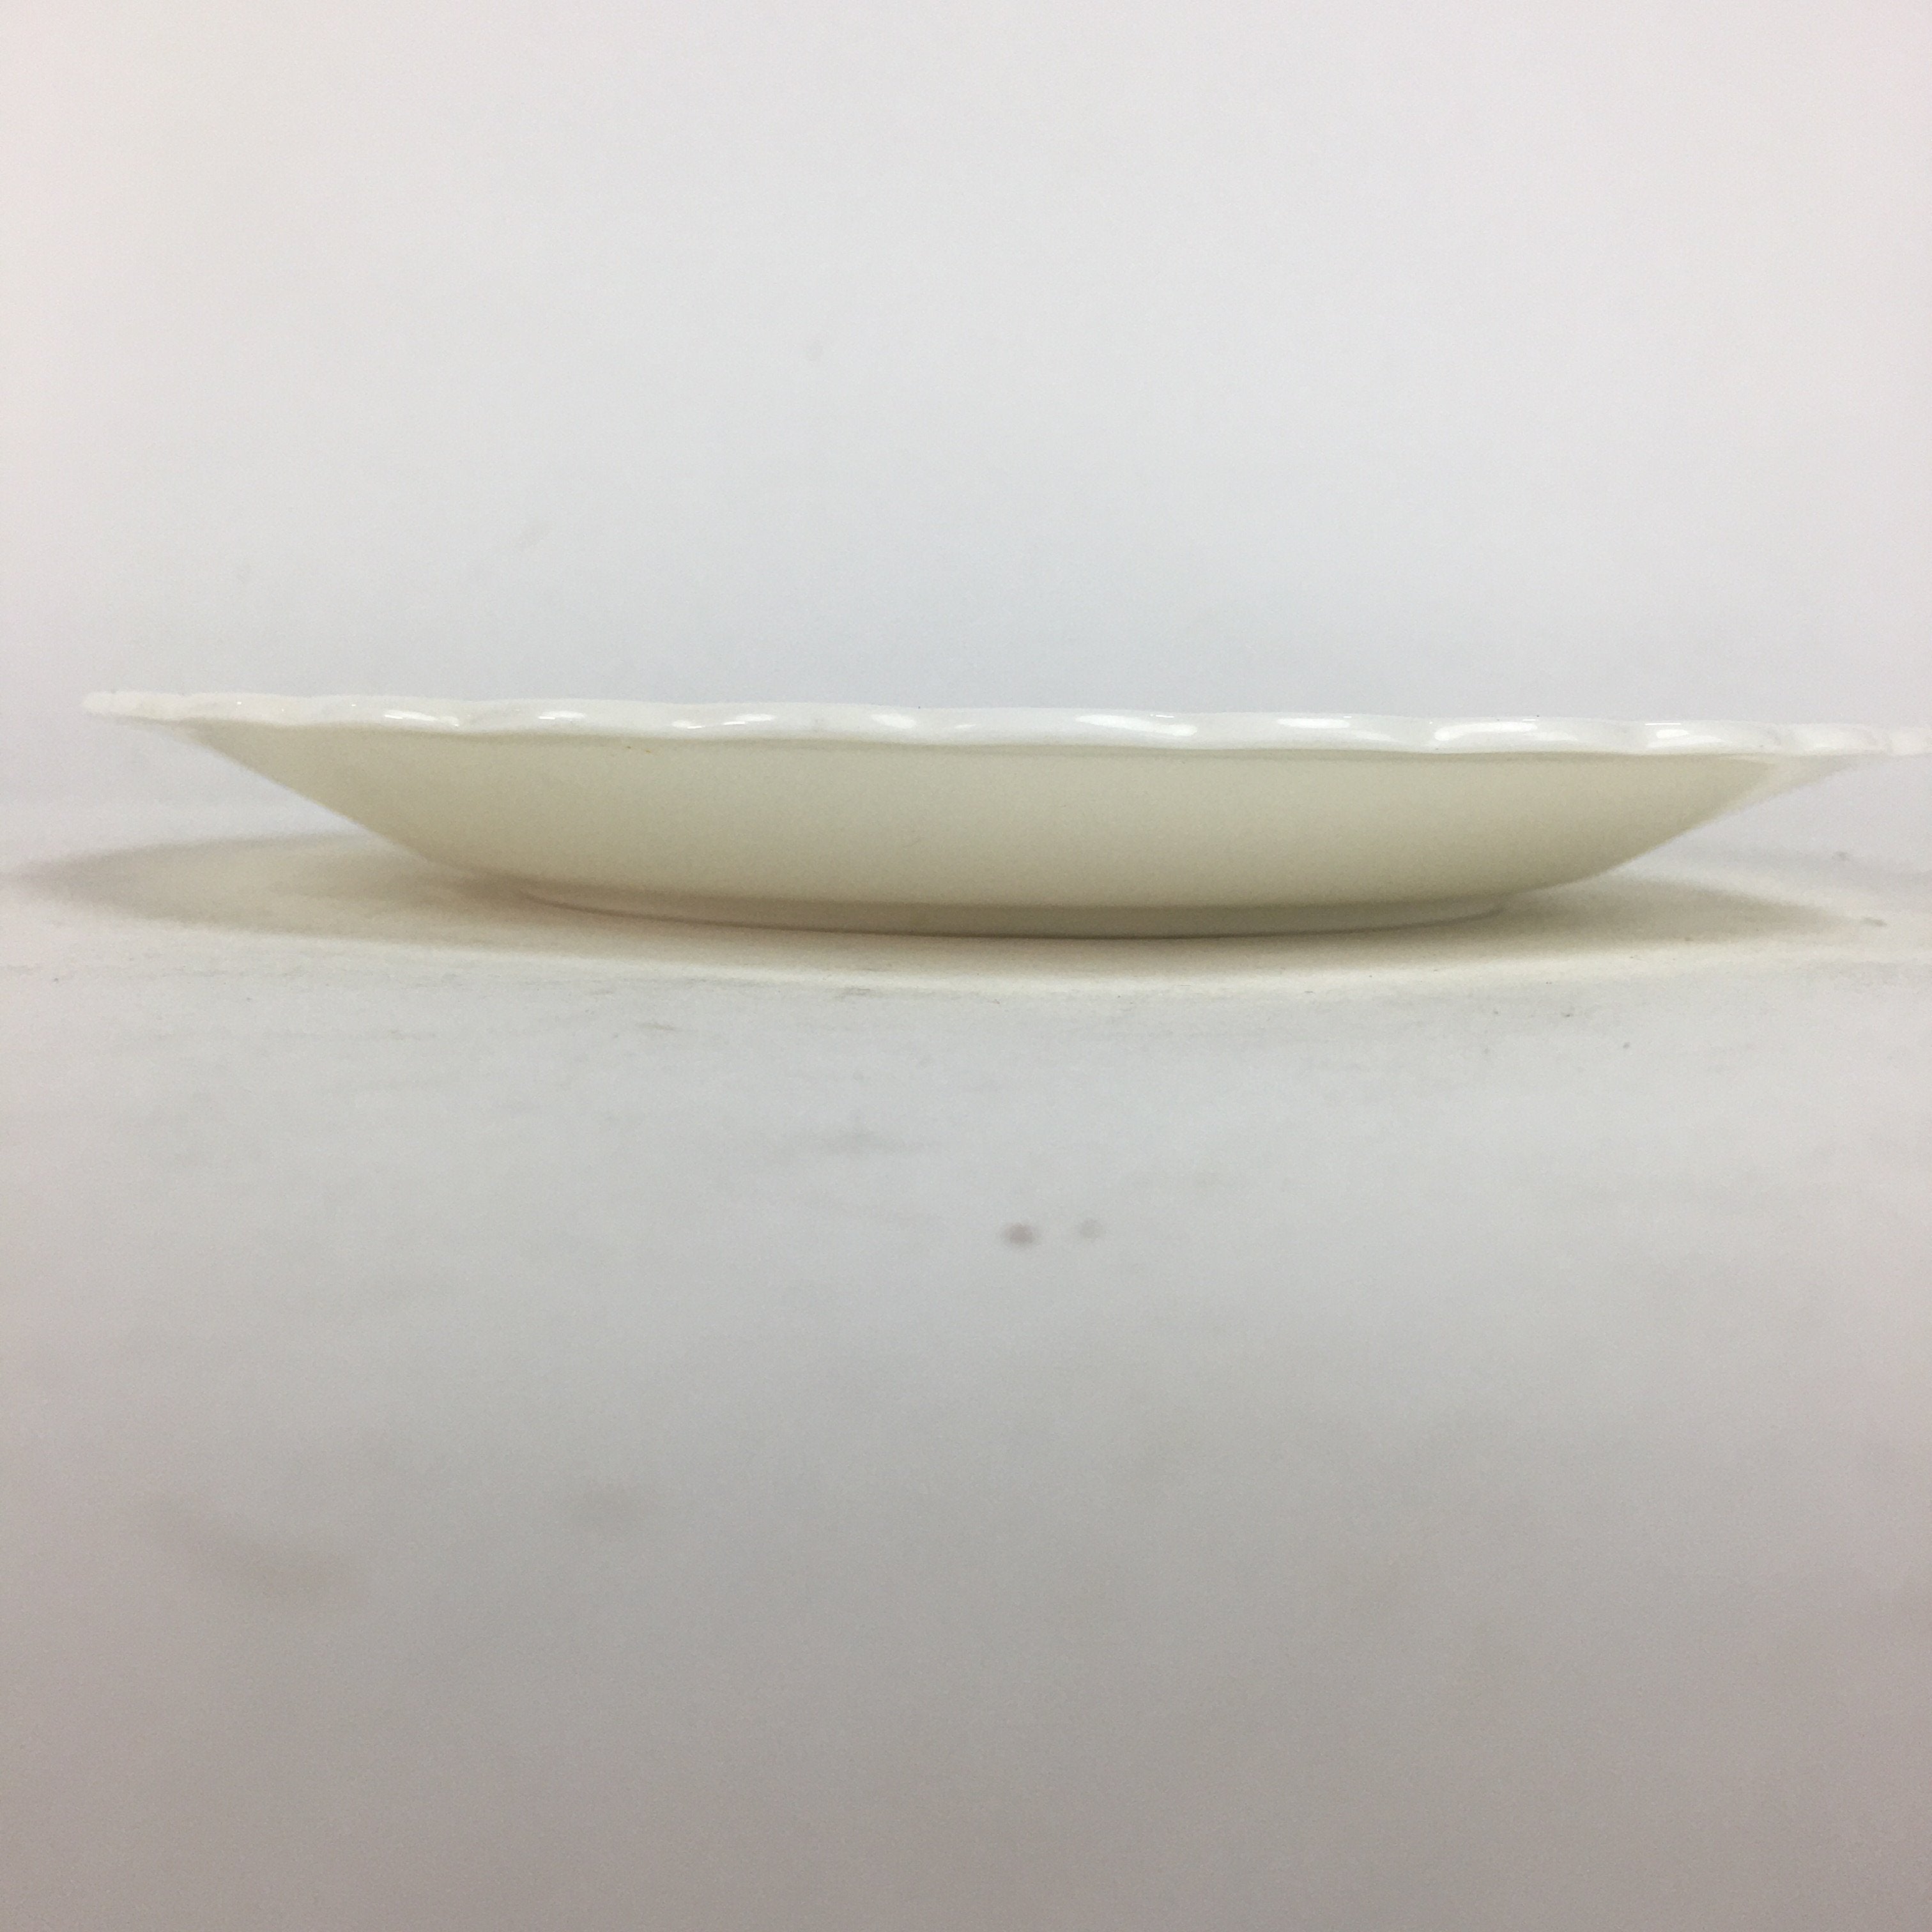 Japanese Porcelain Small Plate Kozara Vtg Narumi Bone China Japan Flower PP692